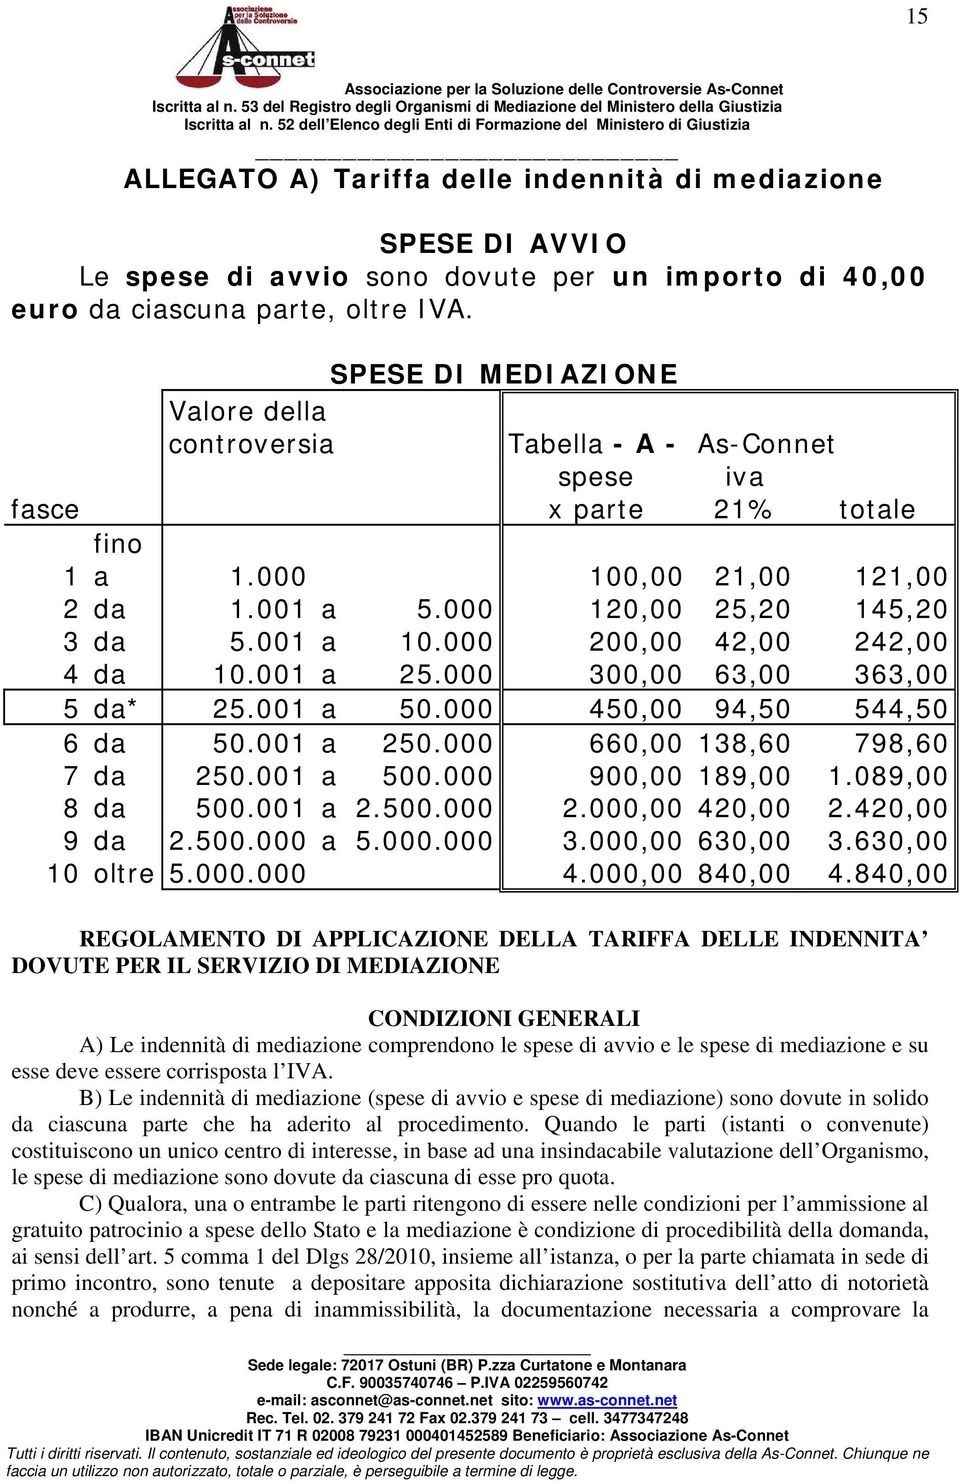 ciascuna parte, oltre IVA. SPESE DI MEDIAZIONE Valore della controversia Tabella - A - As-Connet spese iva fasce x parte 21% totale fino 1 a 1.000 100,00 21,00 121,00 2 da 1.001 a 5.